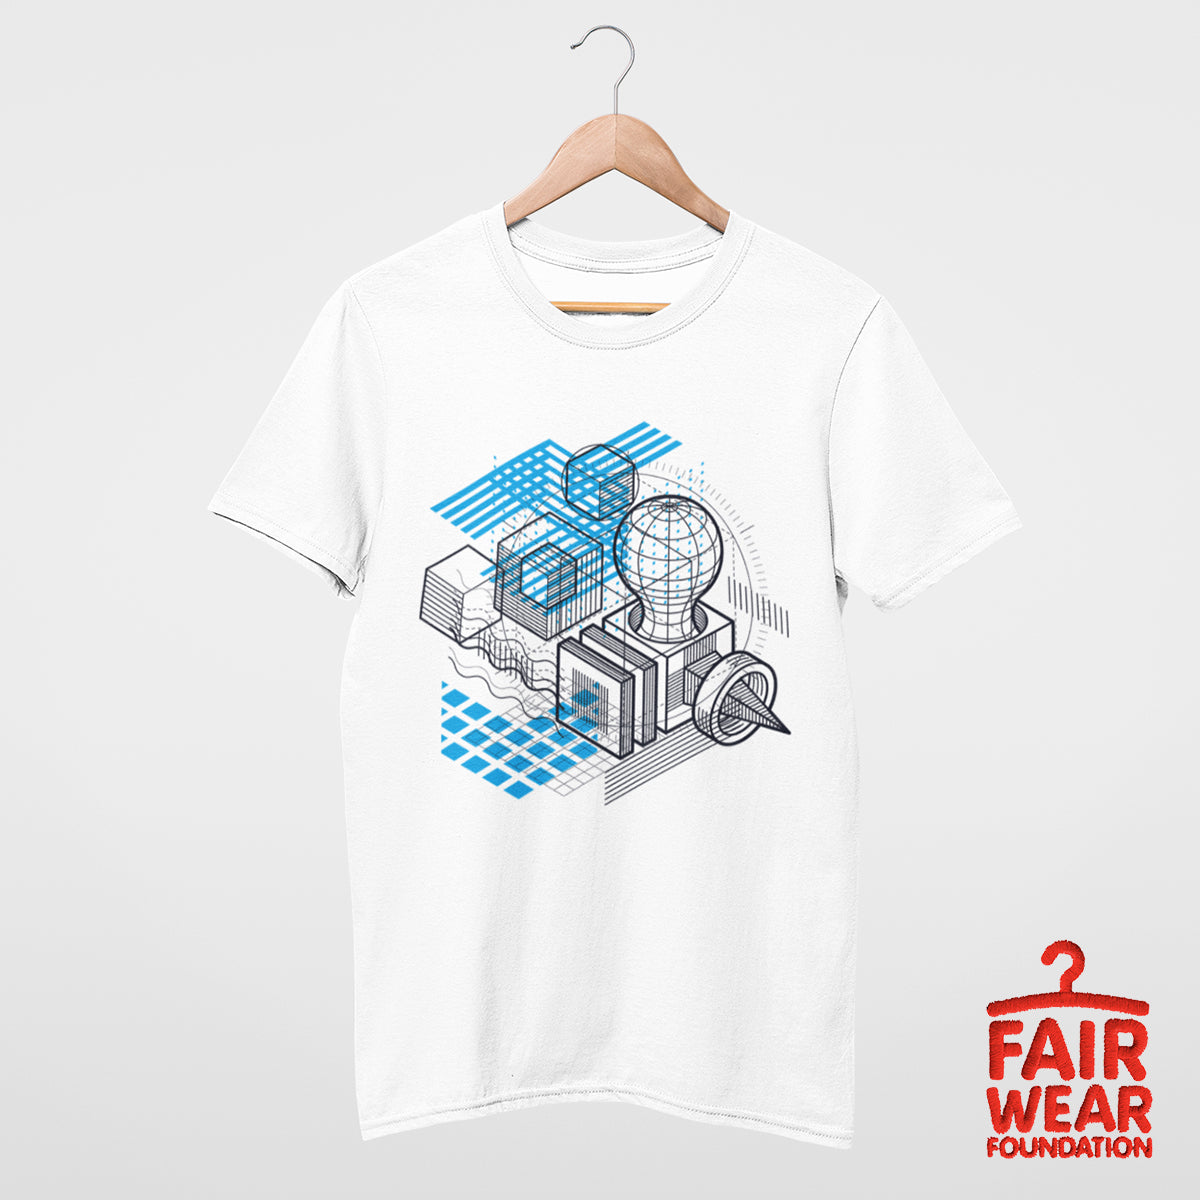 Isometric Elements Shapes Unique T-Shirt Design for Men Woman & Kids - Promotion - Kuzi Tees